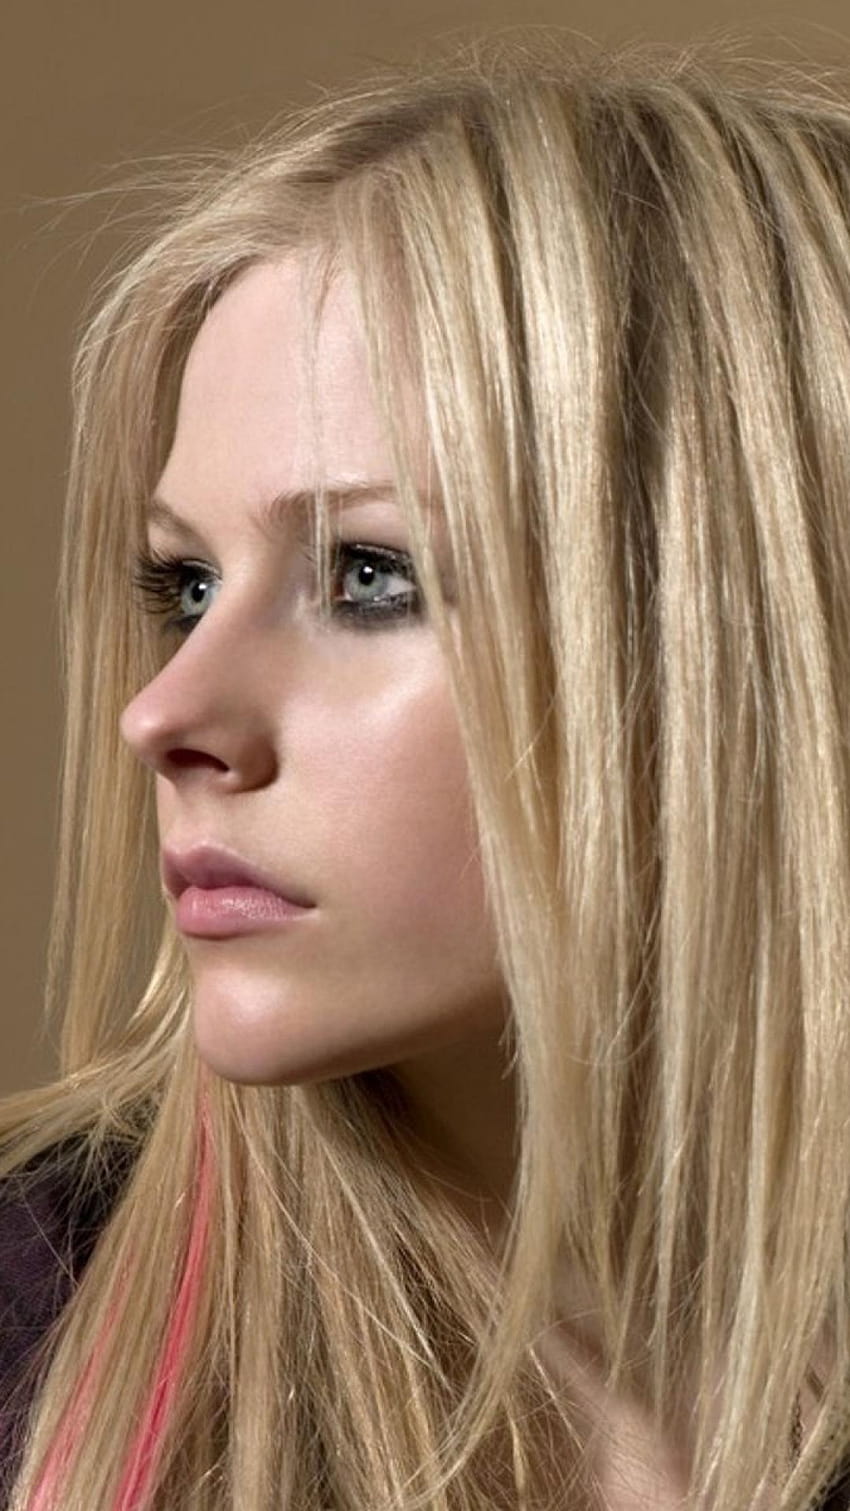 Teléfono de Avril Lavigne, iPhone de Avril Lavigne fondo de pantalla del teléfono